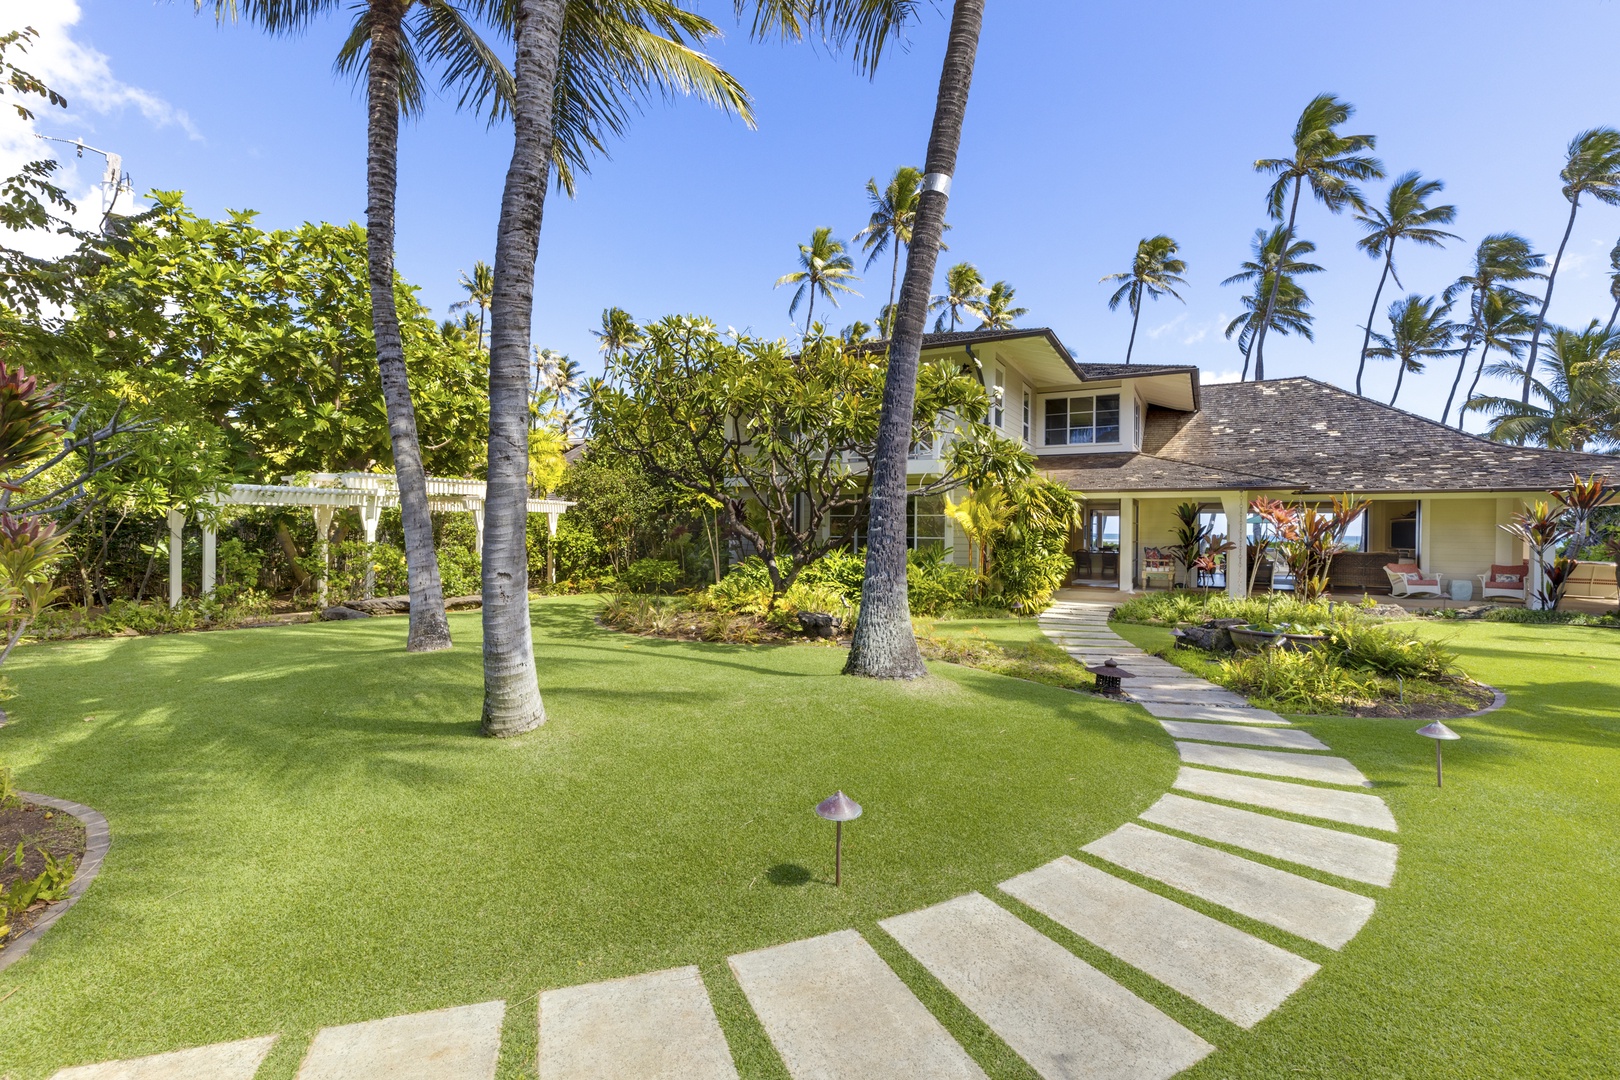 Honolulu Vacation Rentals, Kahala Beachside Estate - Entry walkway from carport to front door